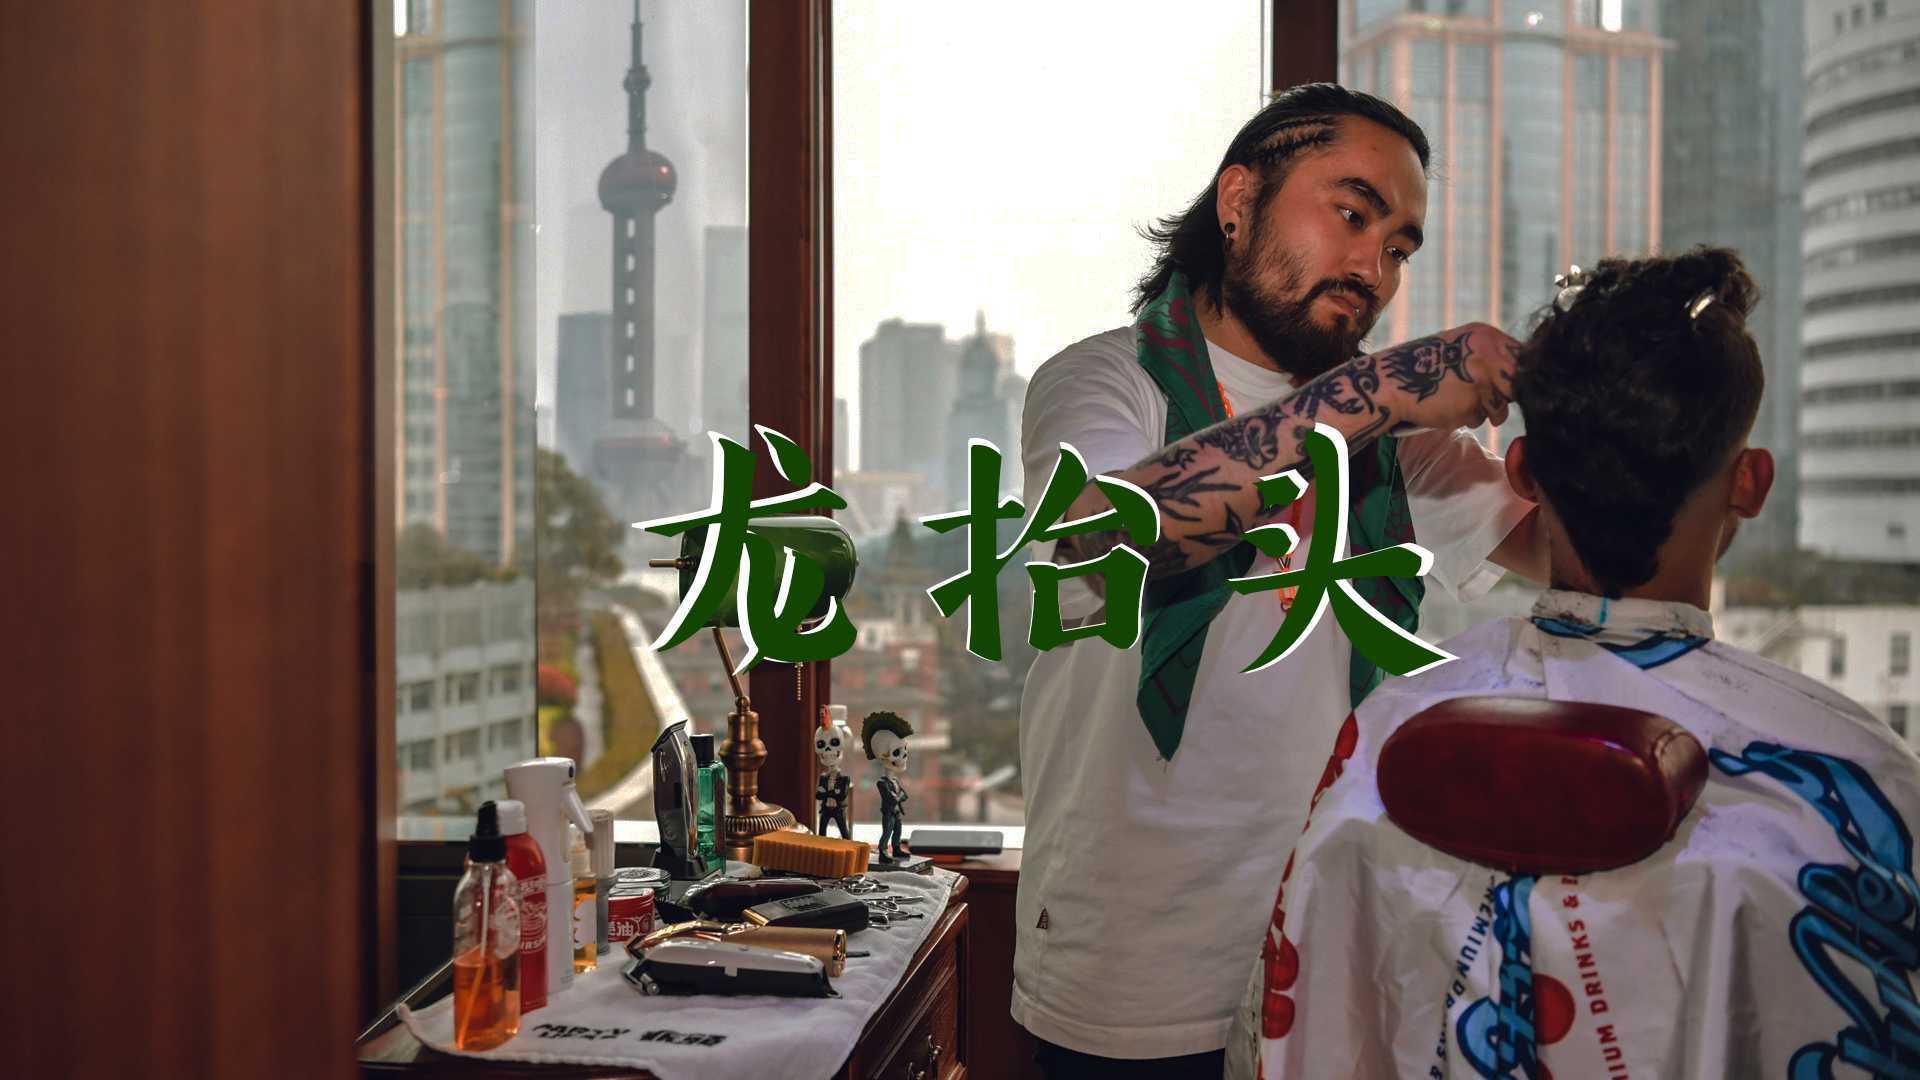 上海外滩W酒店 龙抬头 活动故事片 广告宣传创意短片